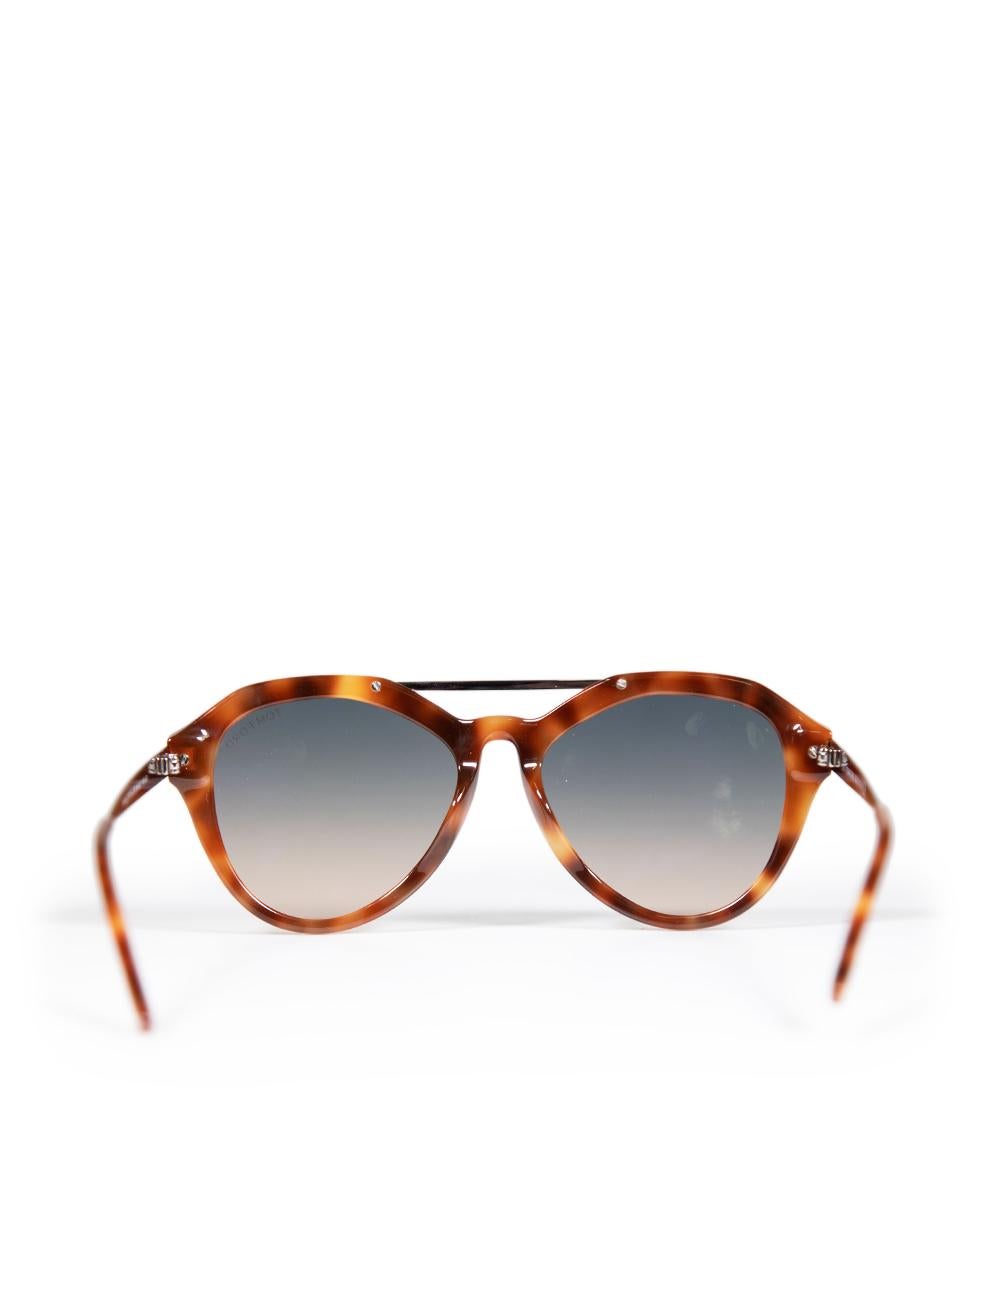 Women's Tom Ford Blonde Havana Lisa Aviator Sunglasses For Sale